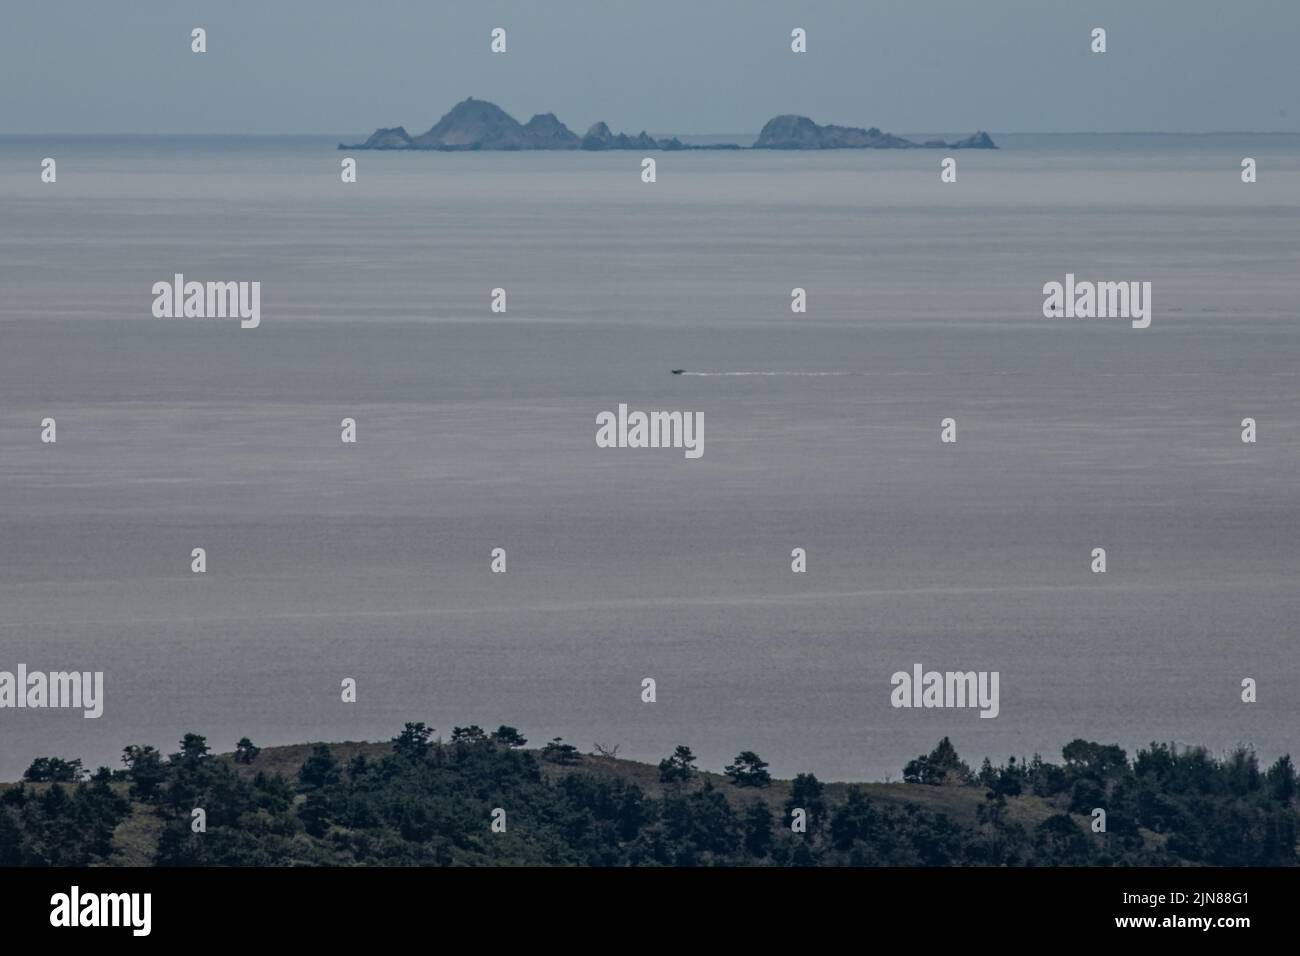 Le isole Farallon o Farallones in lontananza nell'oceano Pacifico come visto dalla terraferma in una giornata limpida nella contea di Marin, California. Foto Stock